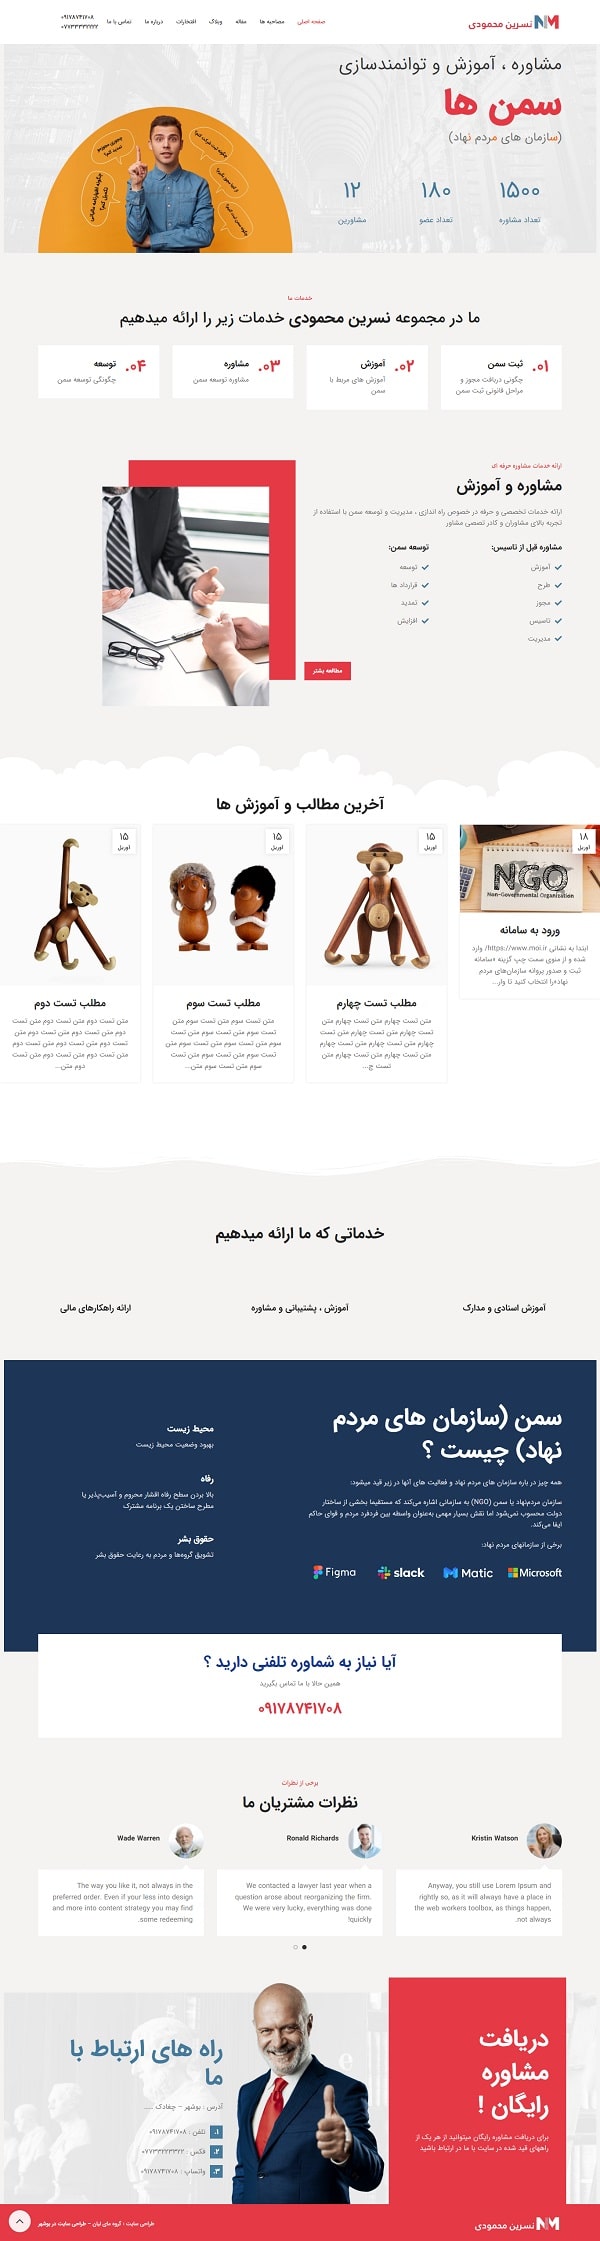 نمونه کار طراحی سایت نسرین محمودی